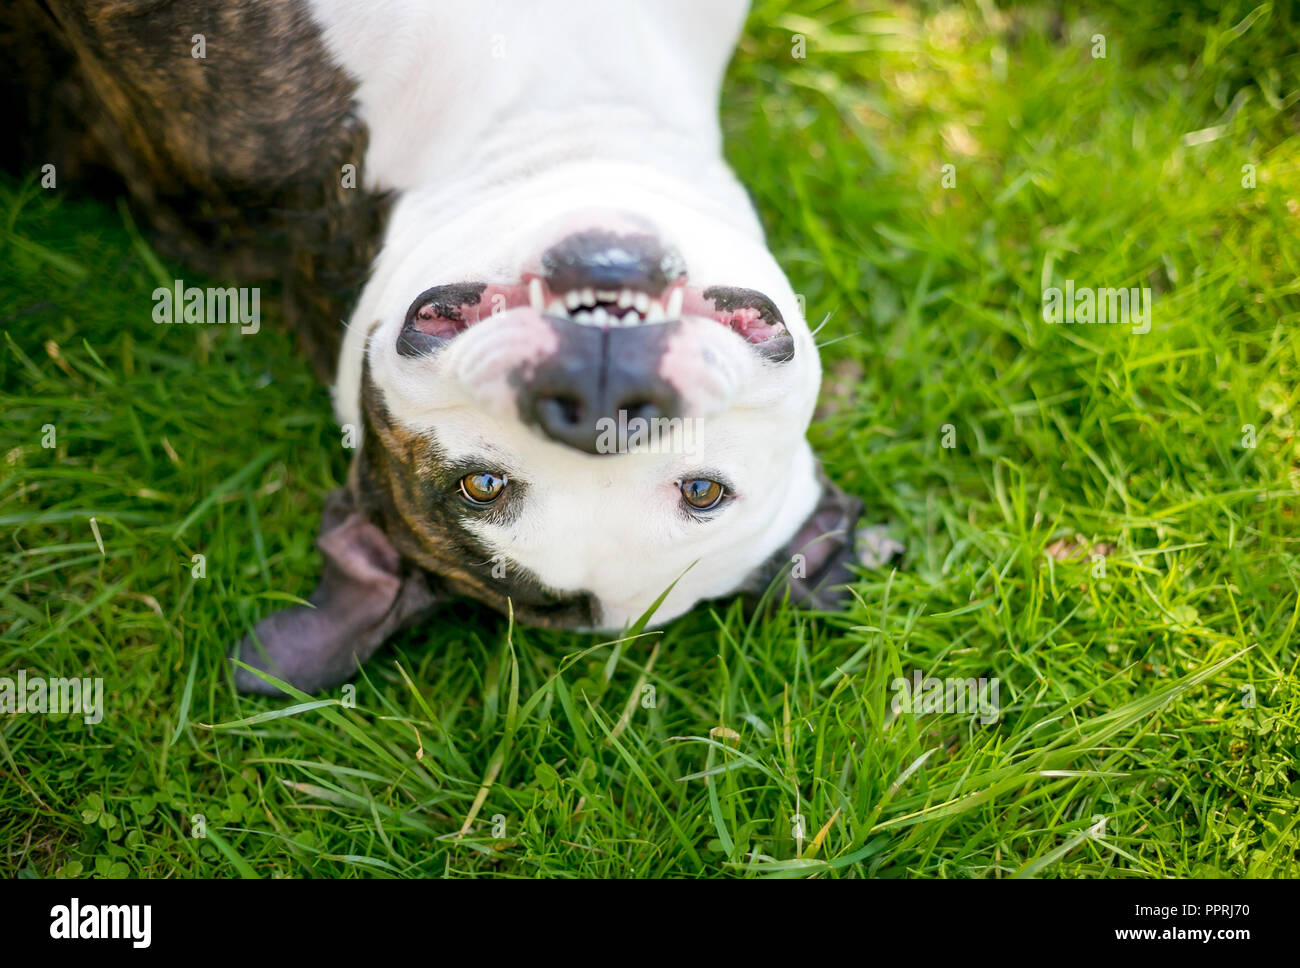 Eine Grube Stier Terrier Mischling Hund auf den Kopf im Gras liegend und lächelnd Stockfoto